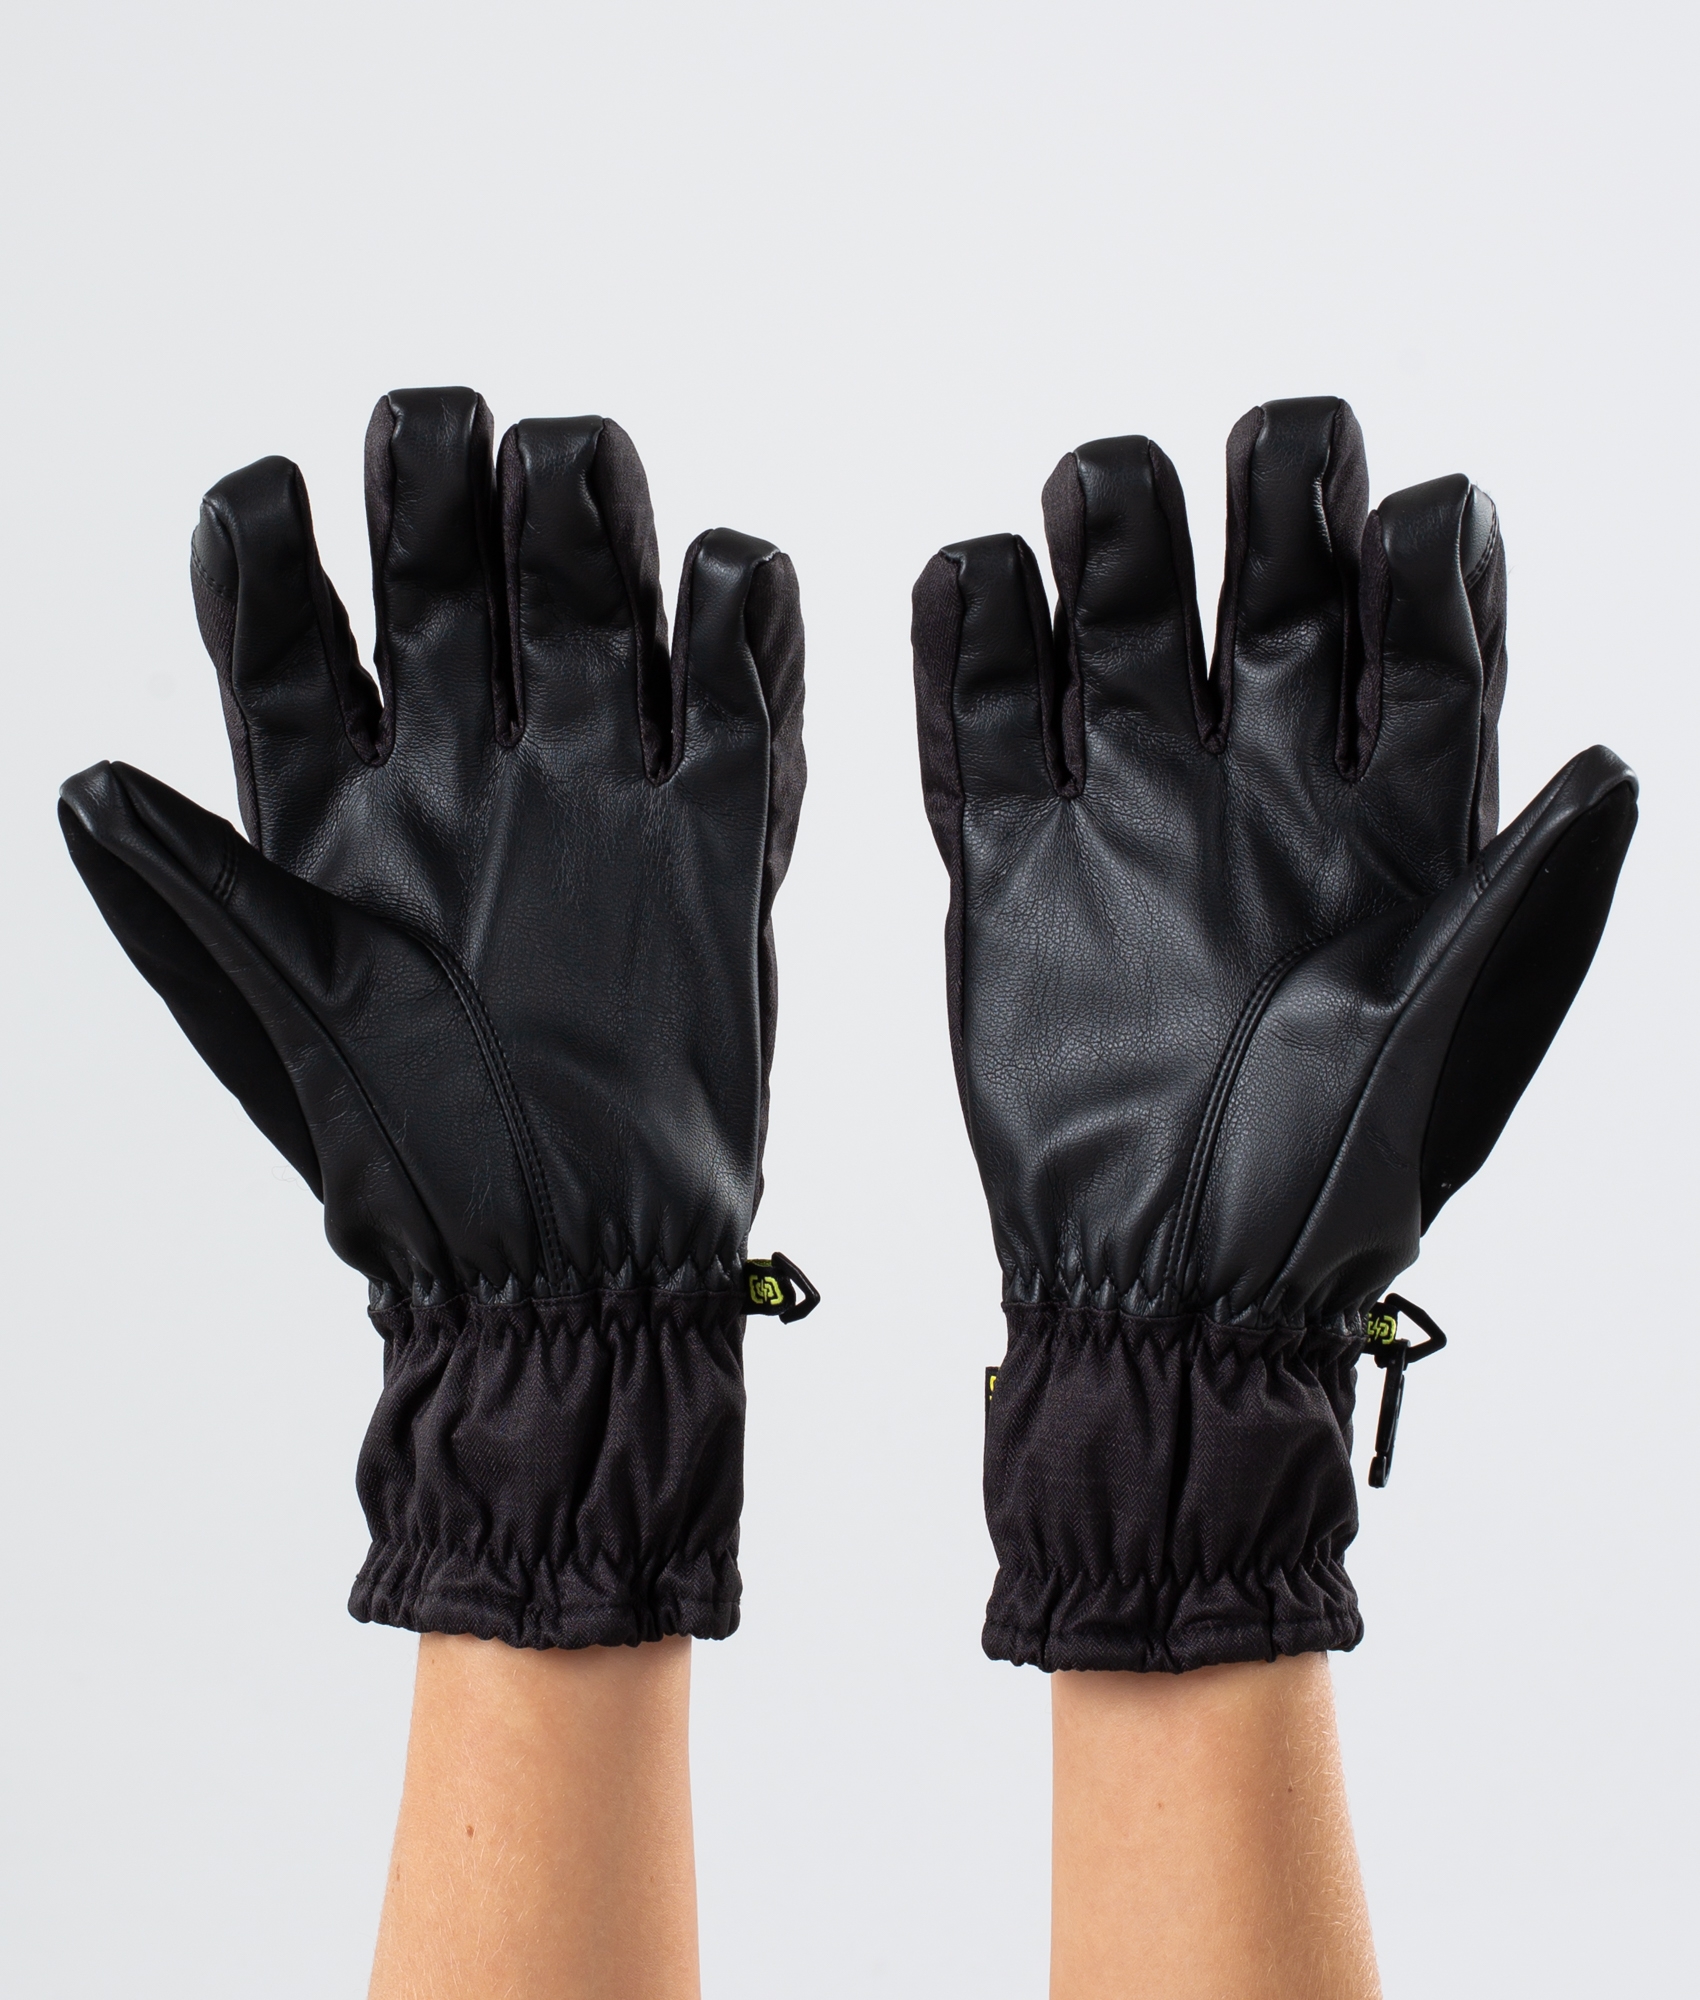 2 in 1 ski gloves